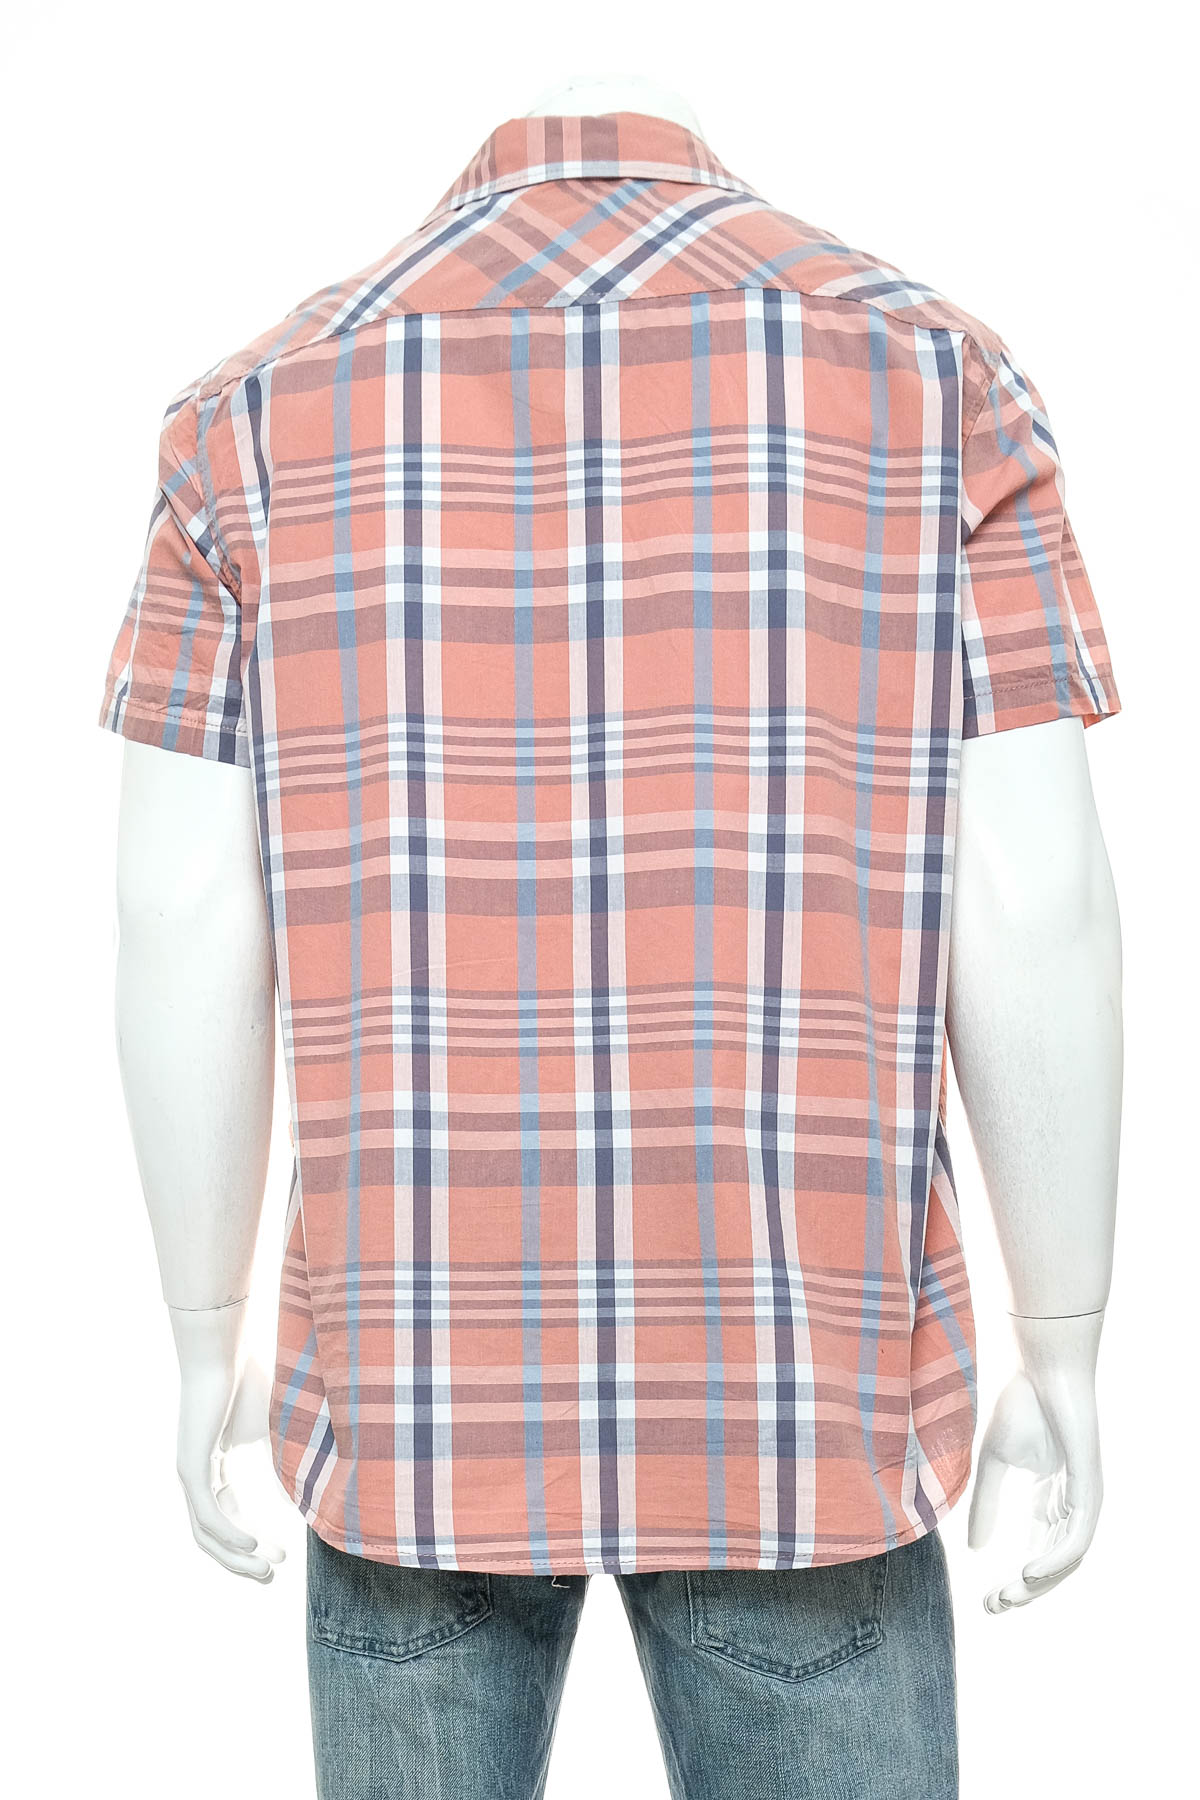 Ανδρικό πουκάμισο - Identic - 1